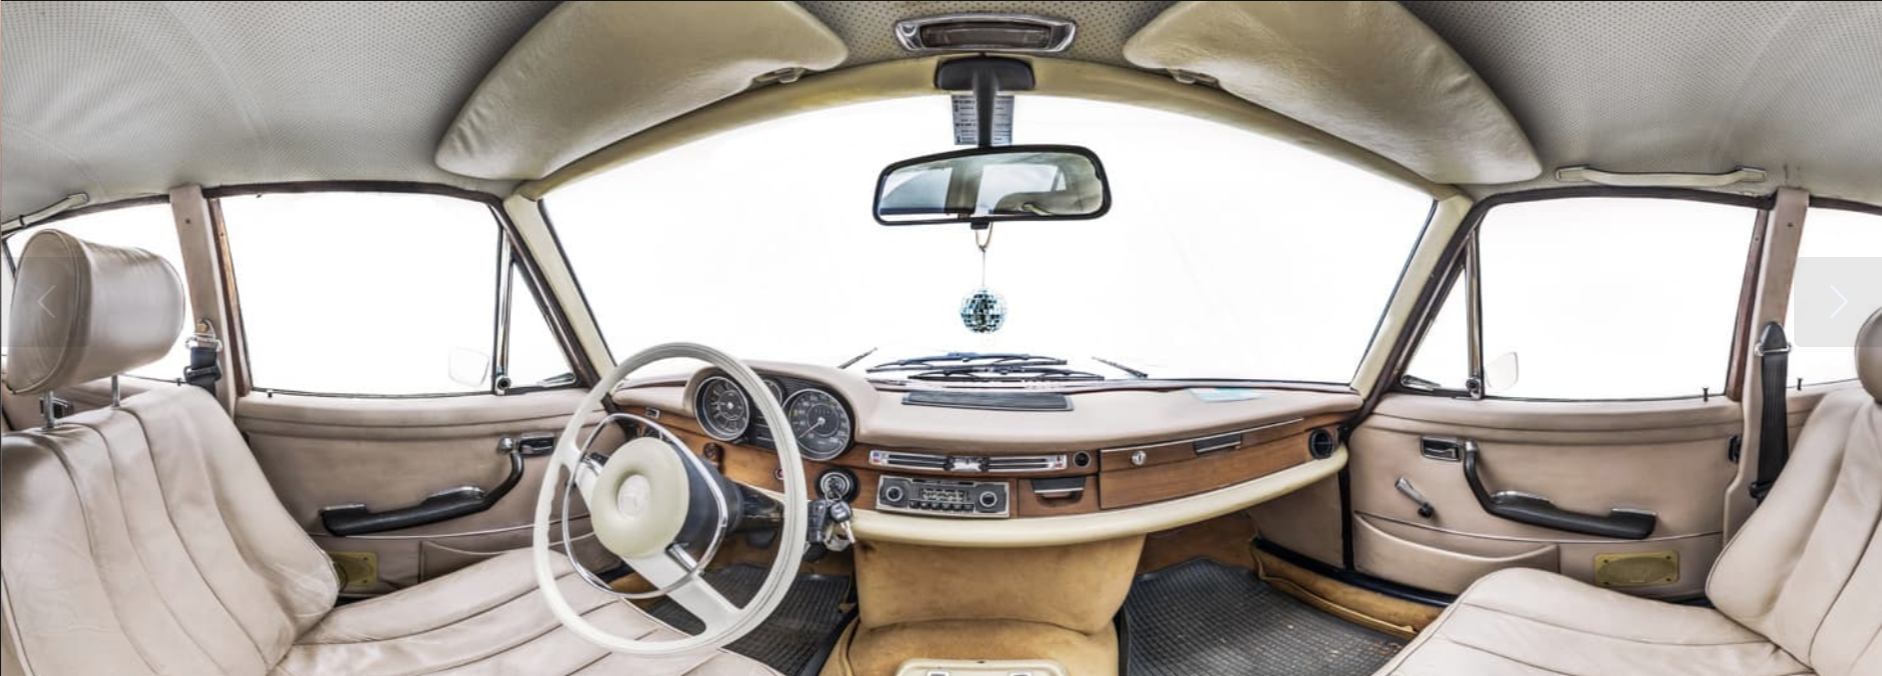 interior of a car panorama